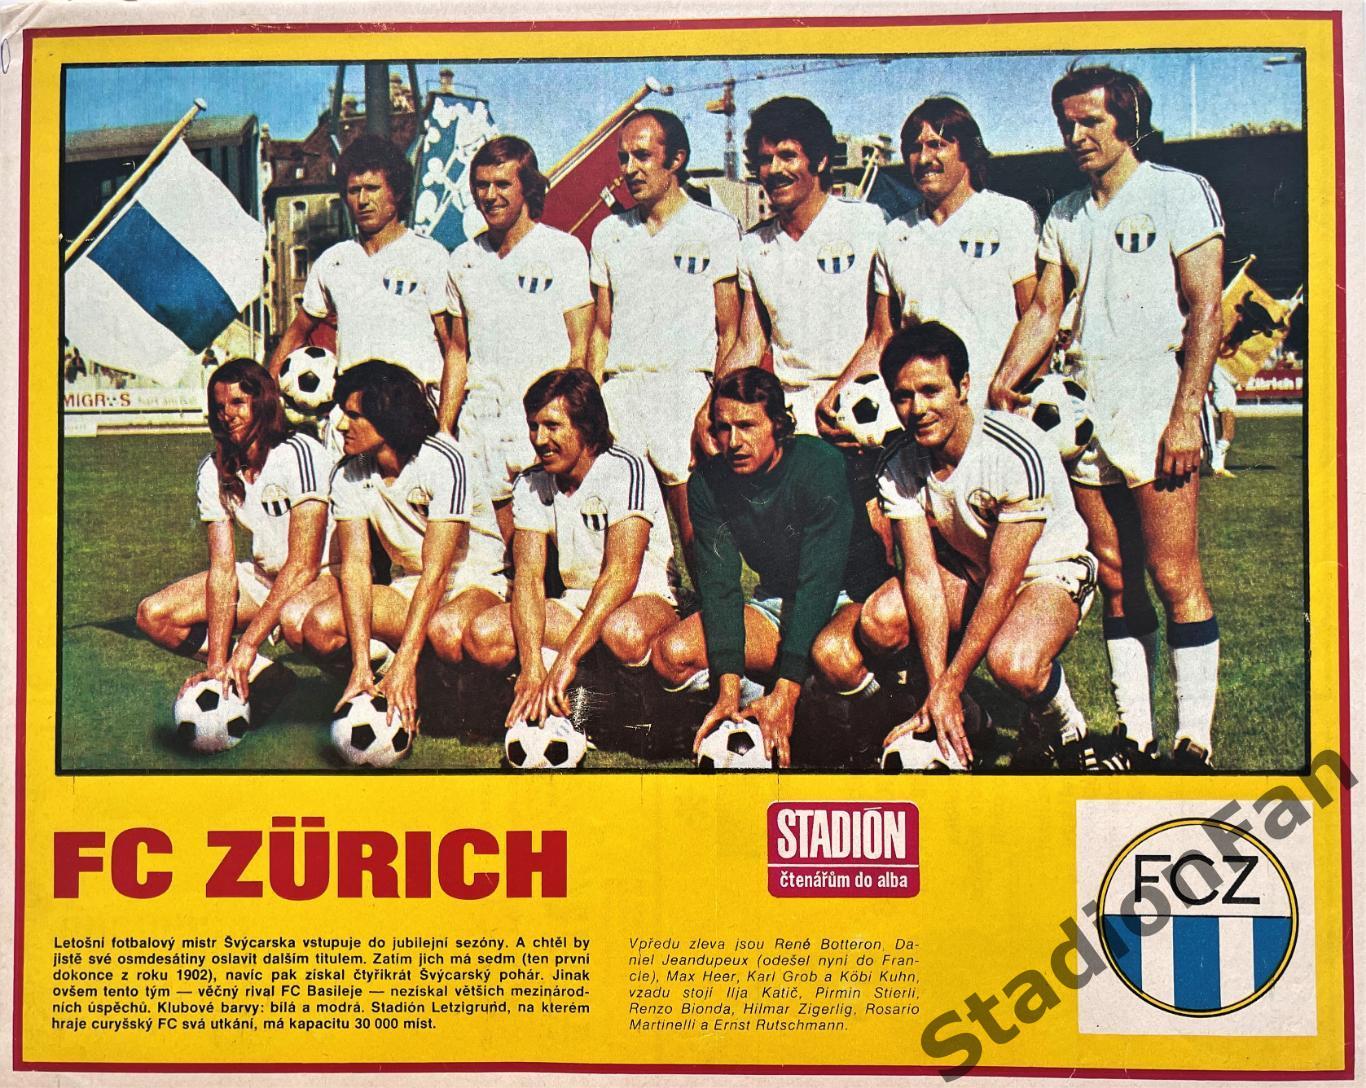 Постер из журнала Стадион (Stadion) - Zurich, 1975.